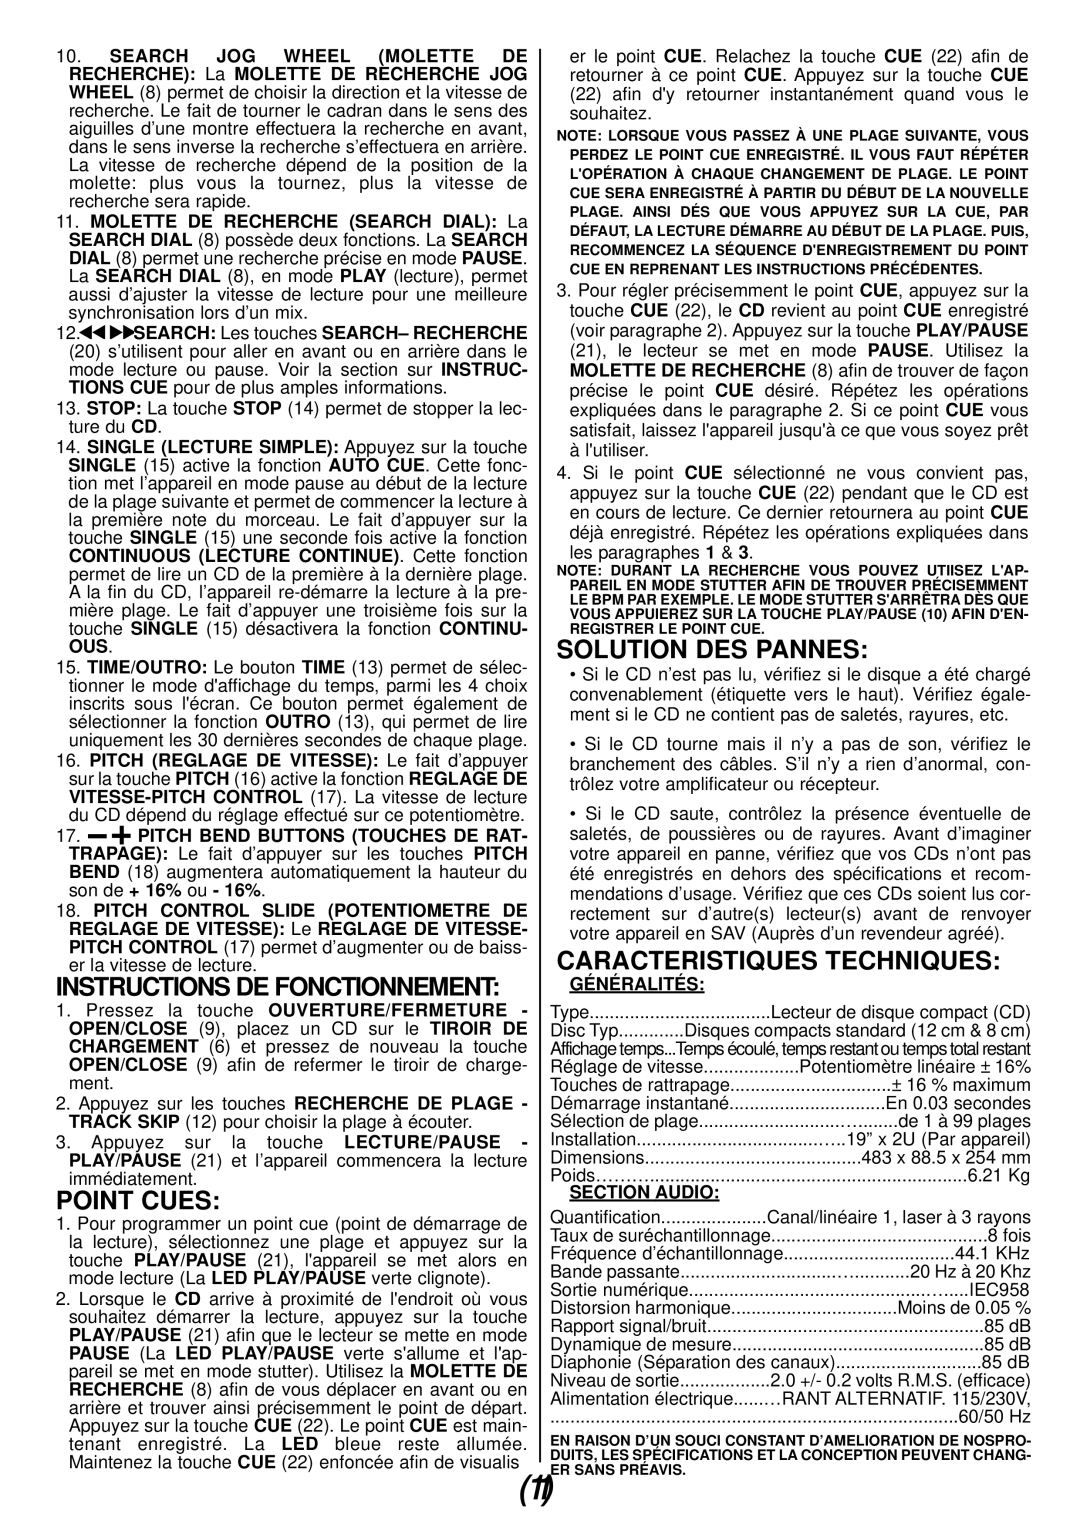 Gemini CDX-01 manual Solution Des Pannes, Caracteristiques Techniques, Généralités, Section Audio 